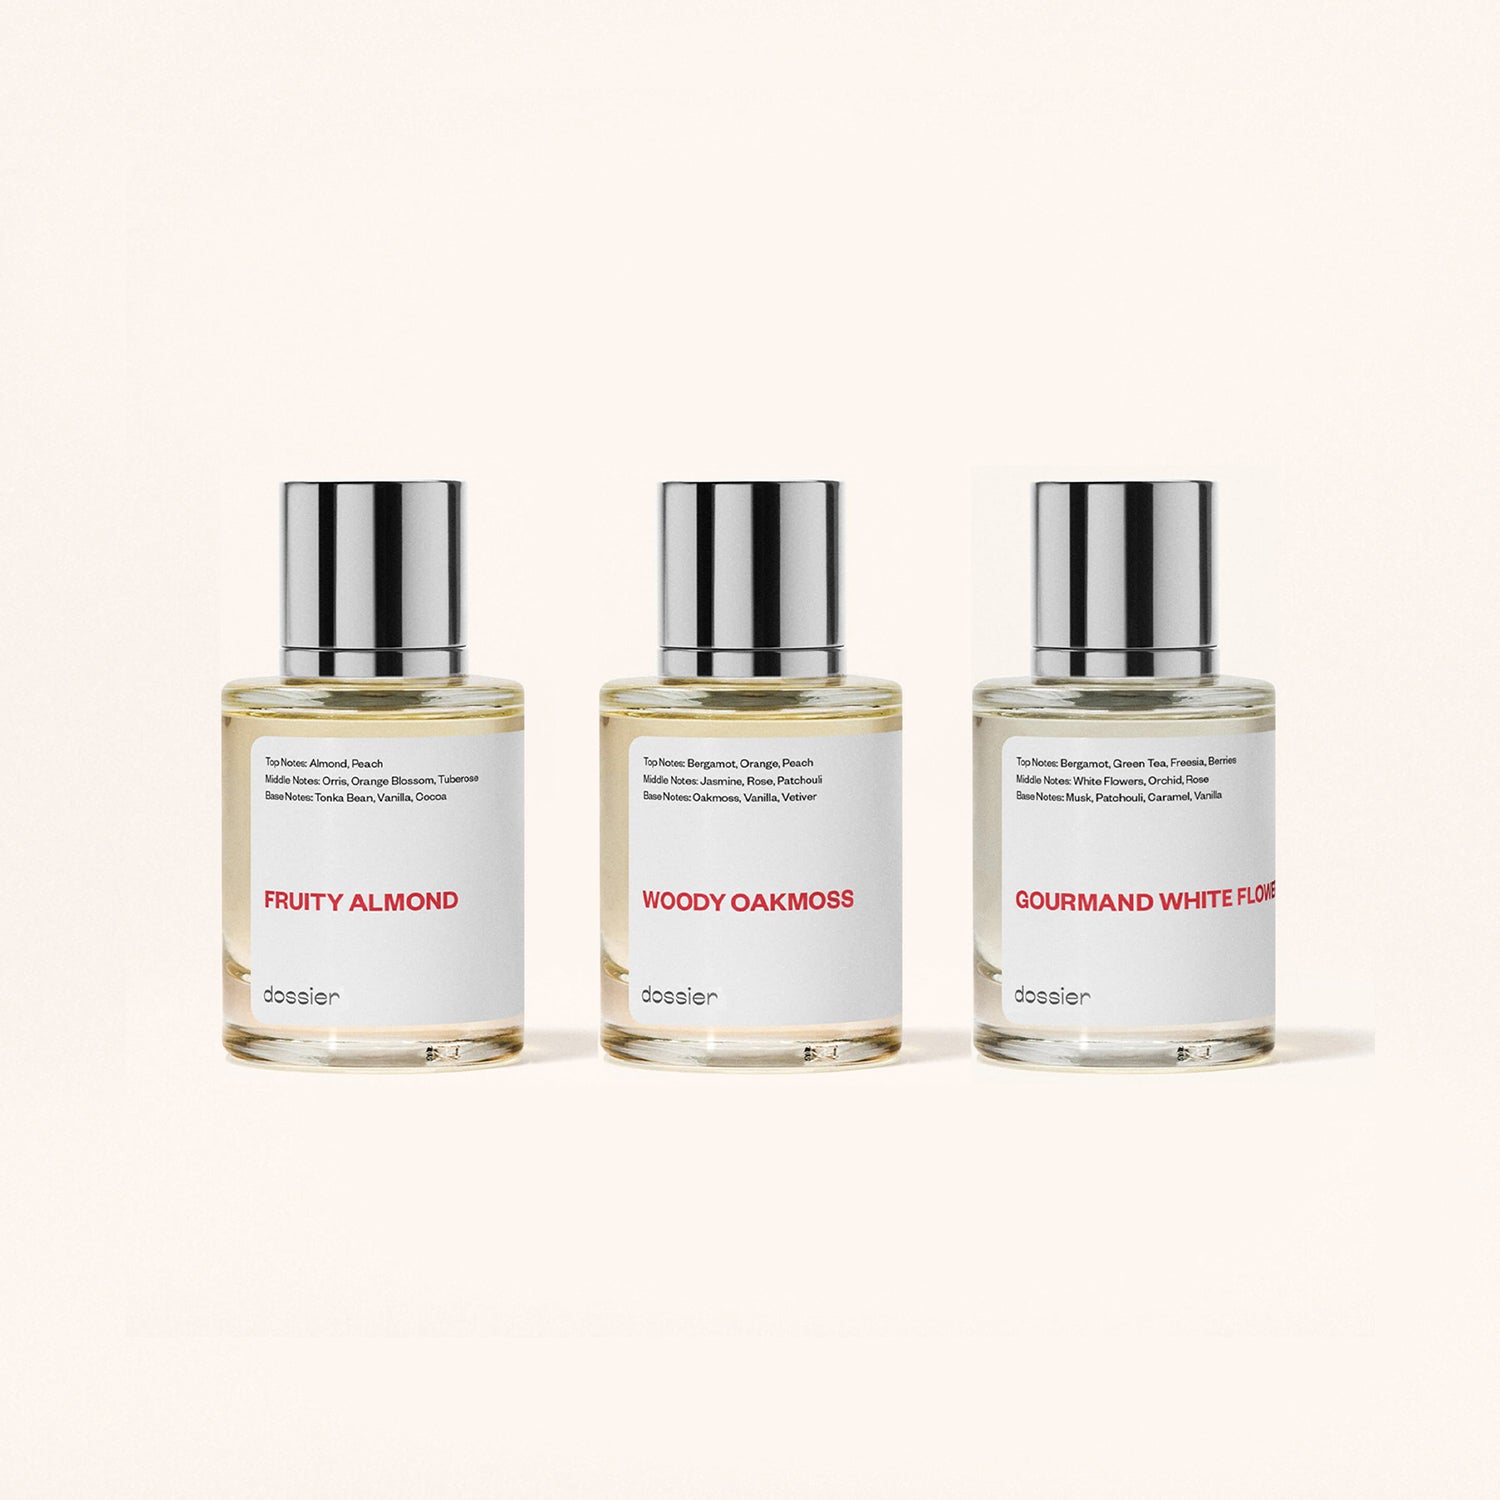 Perfume & fragrance gift set for women - Dossier Perfumes